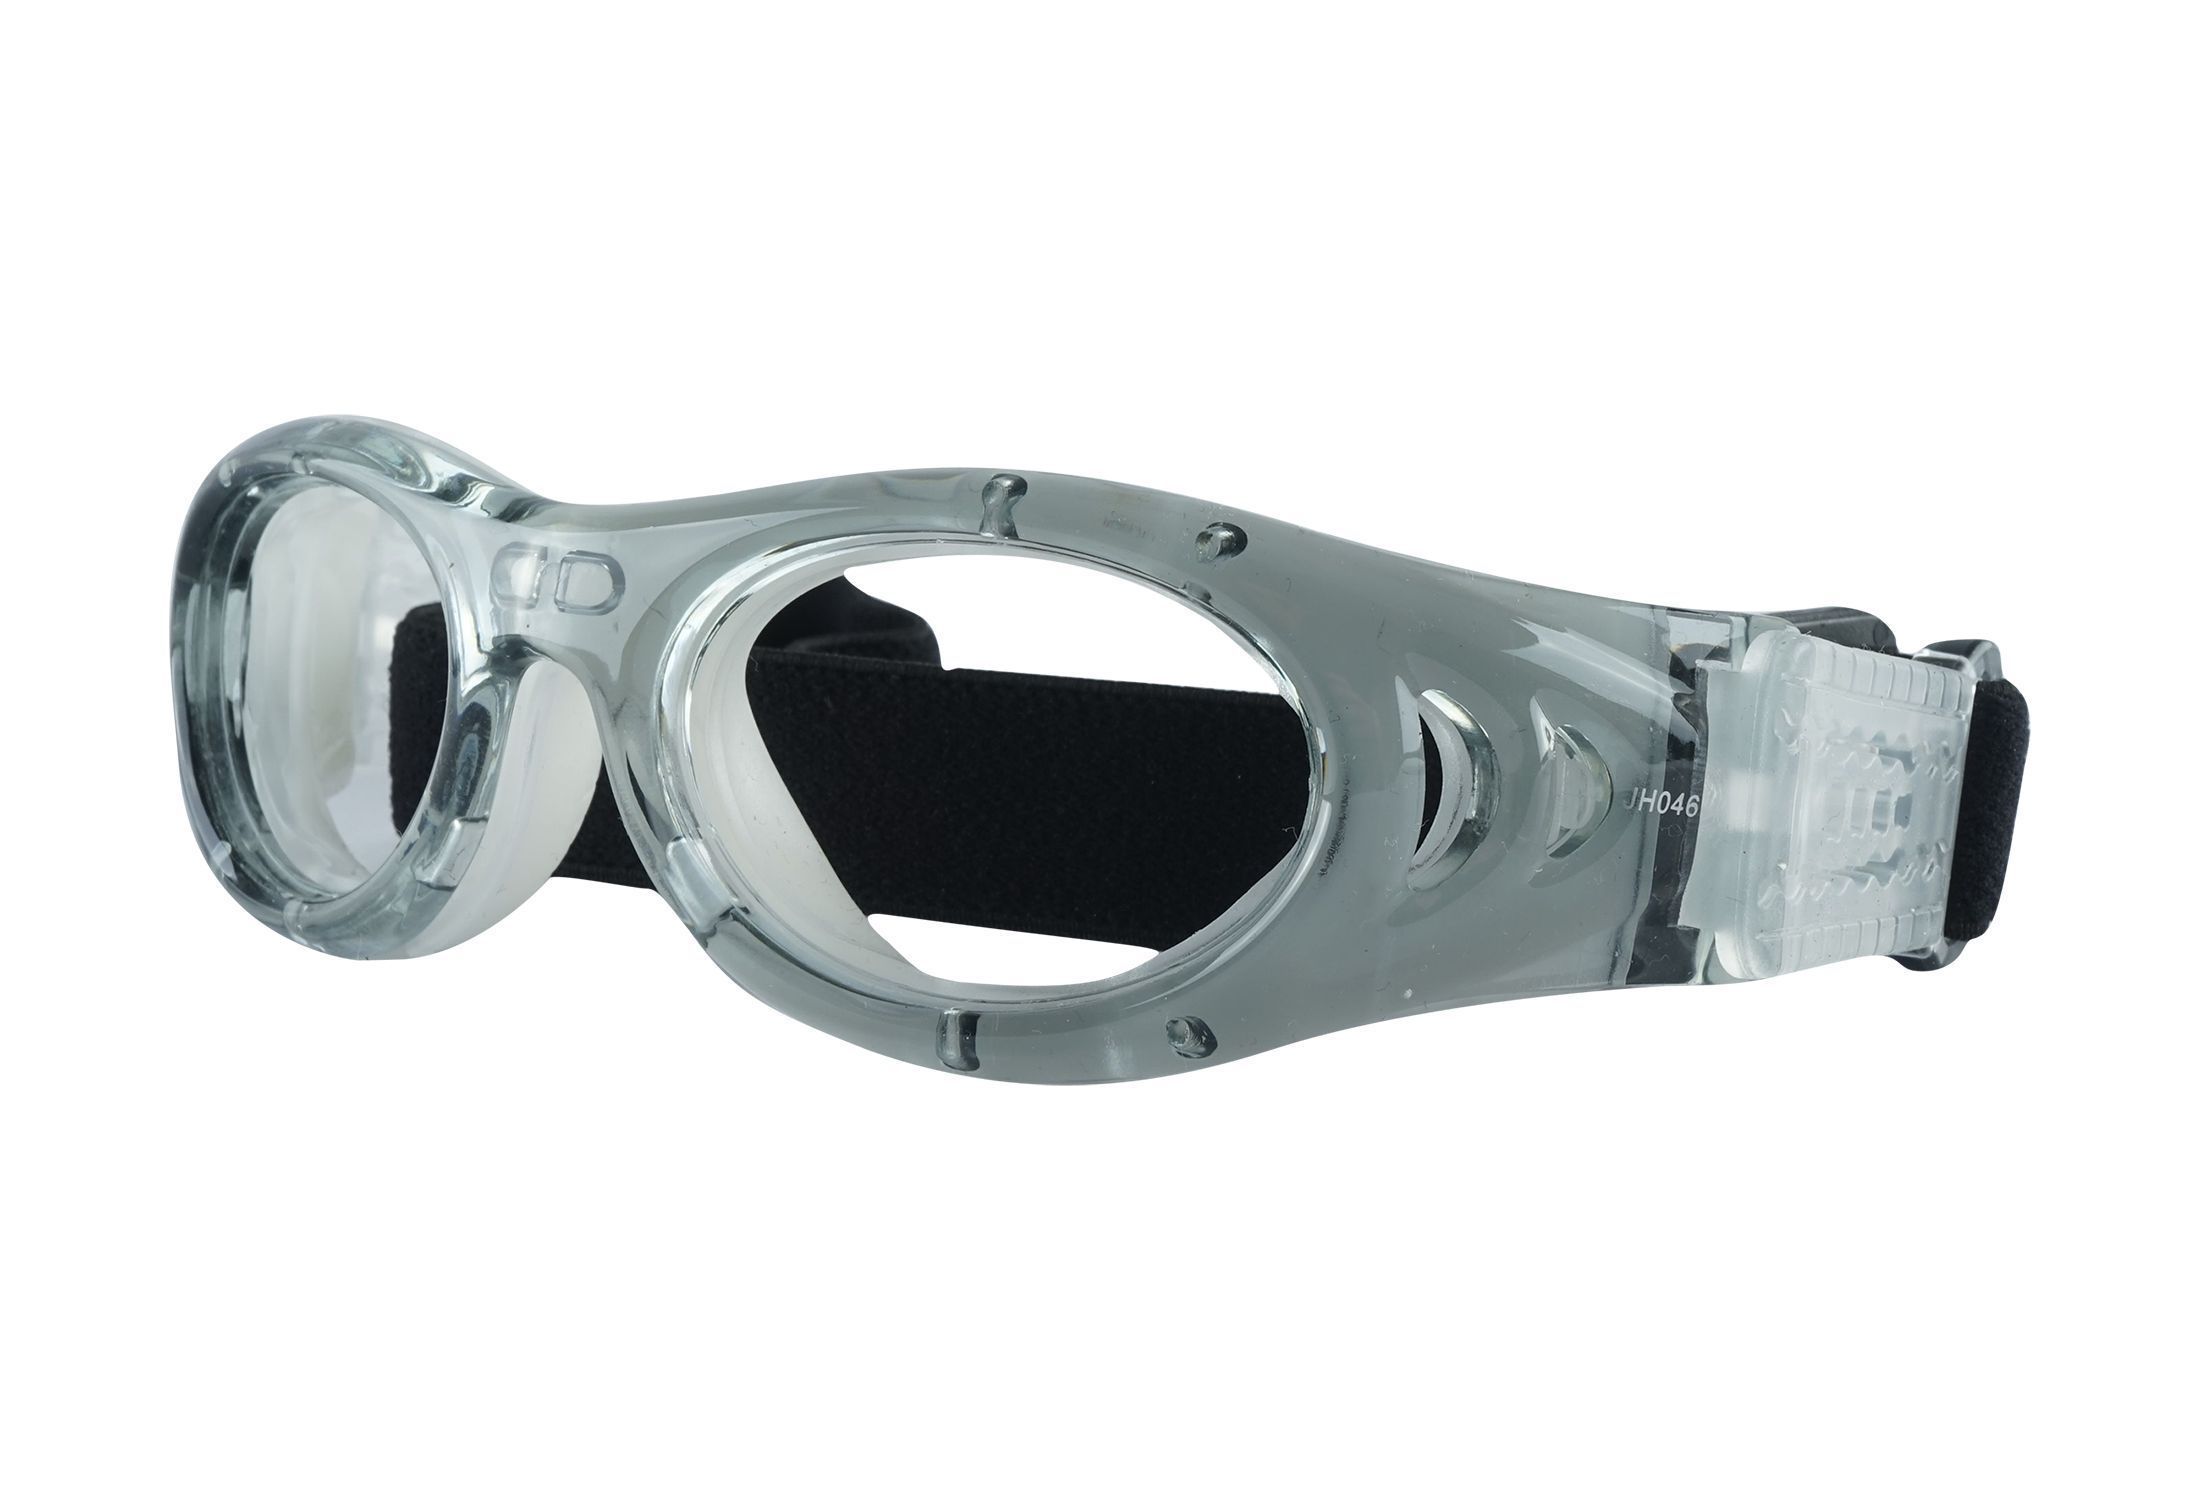 Sportsbriller med styrke fra eo Rough - Griffin - Grå